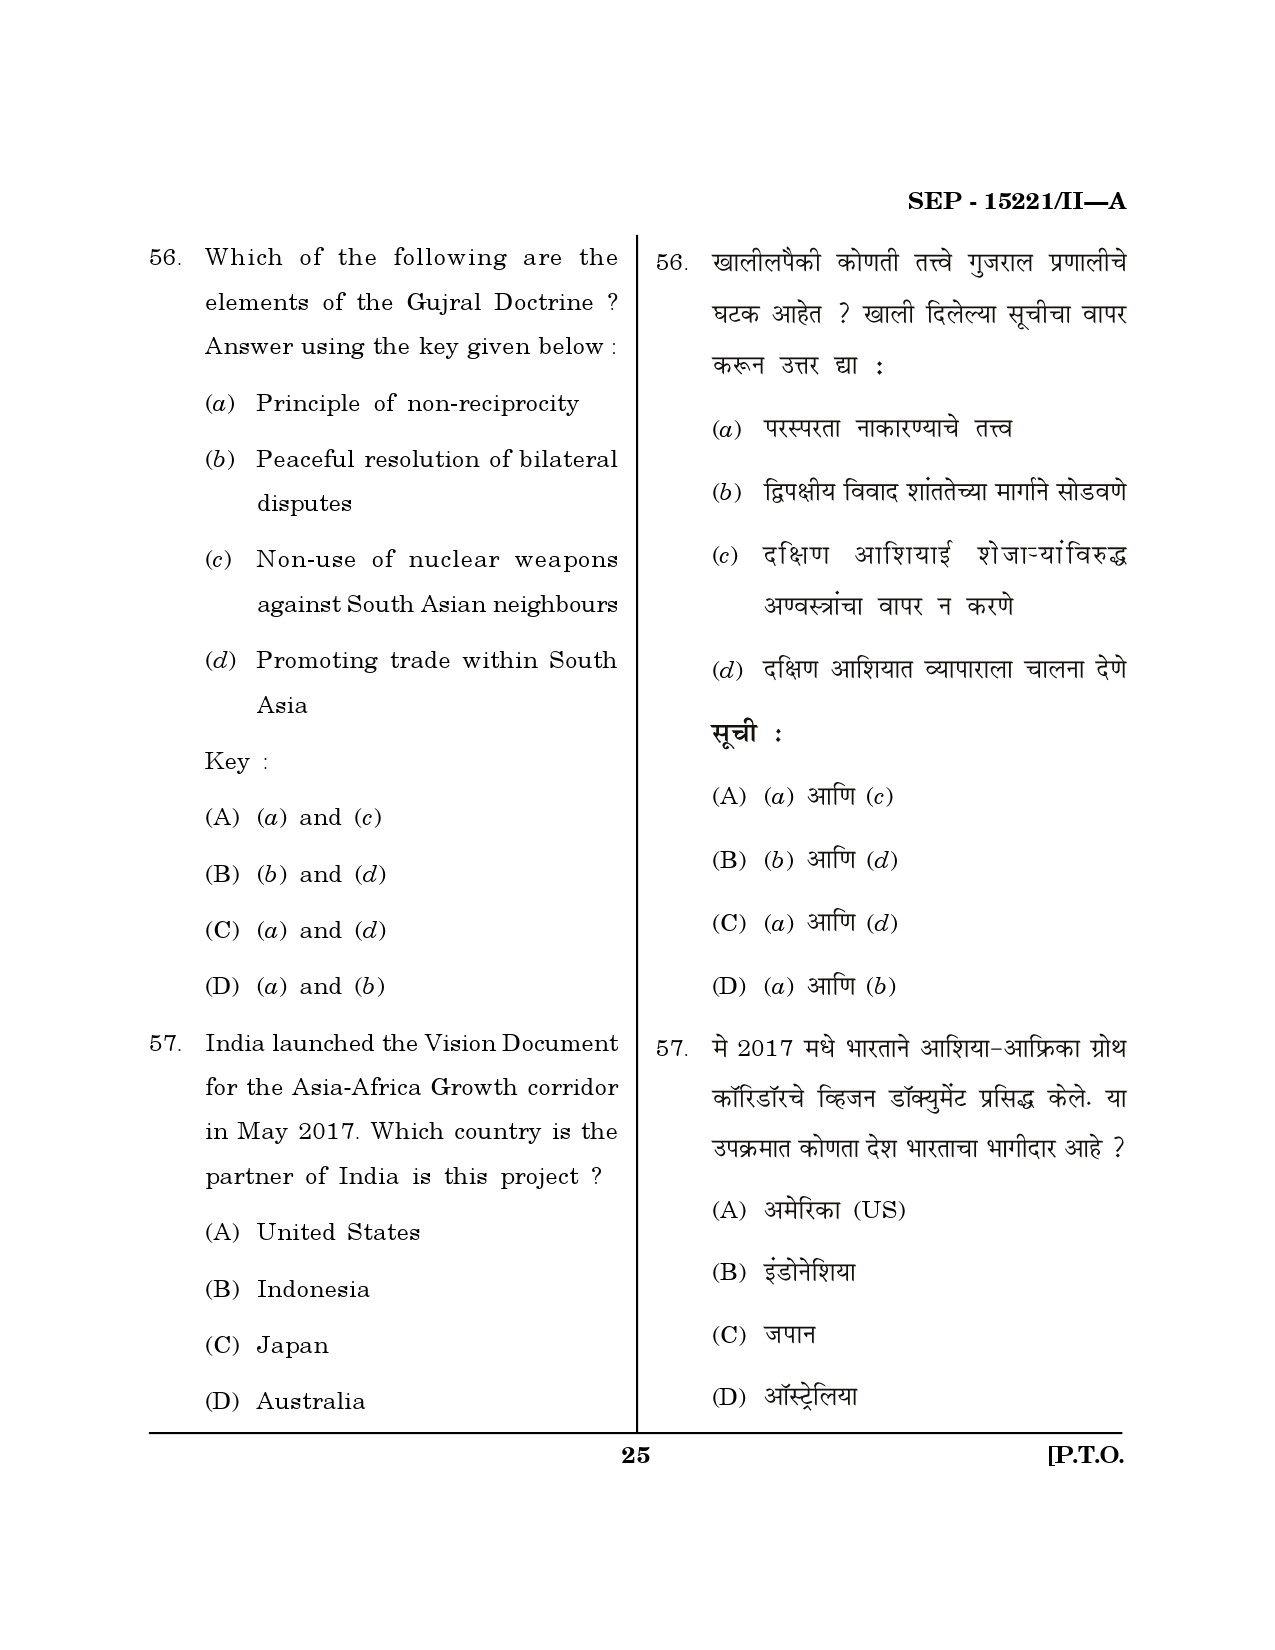 Maharashtra SET Political Science Exam Question Paper September 2021 24